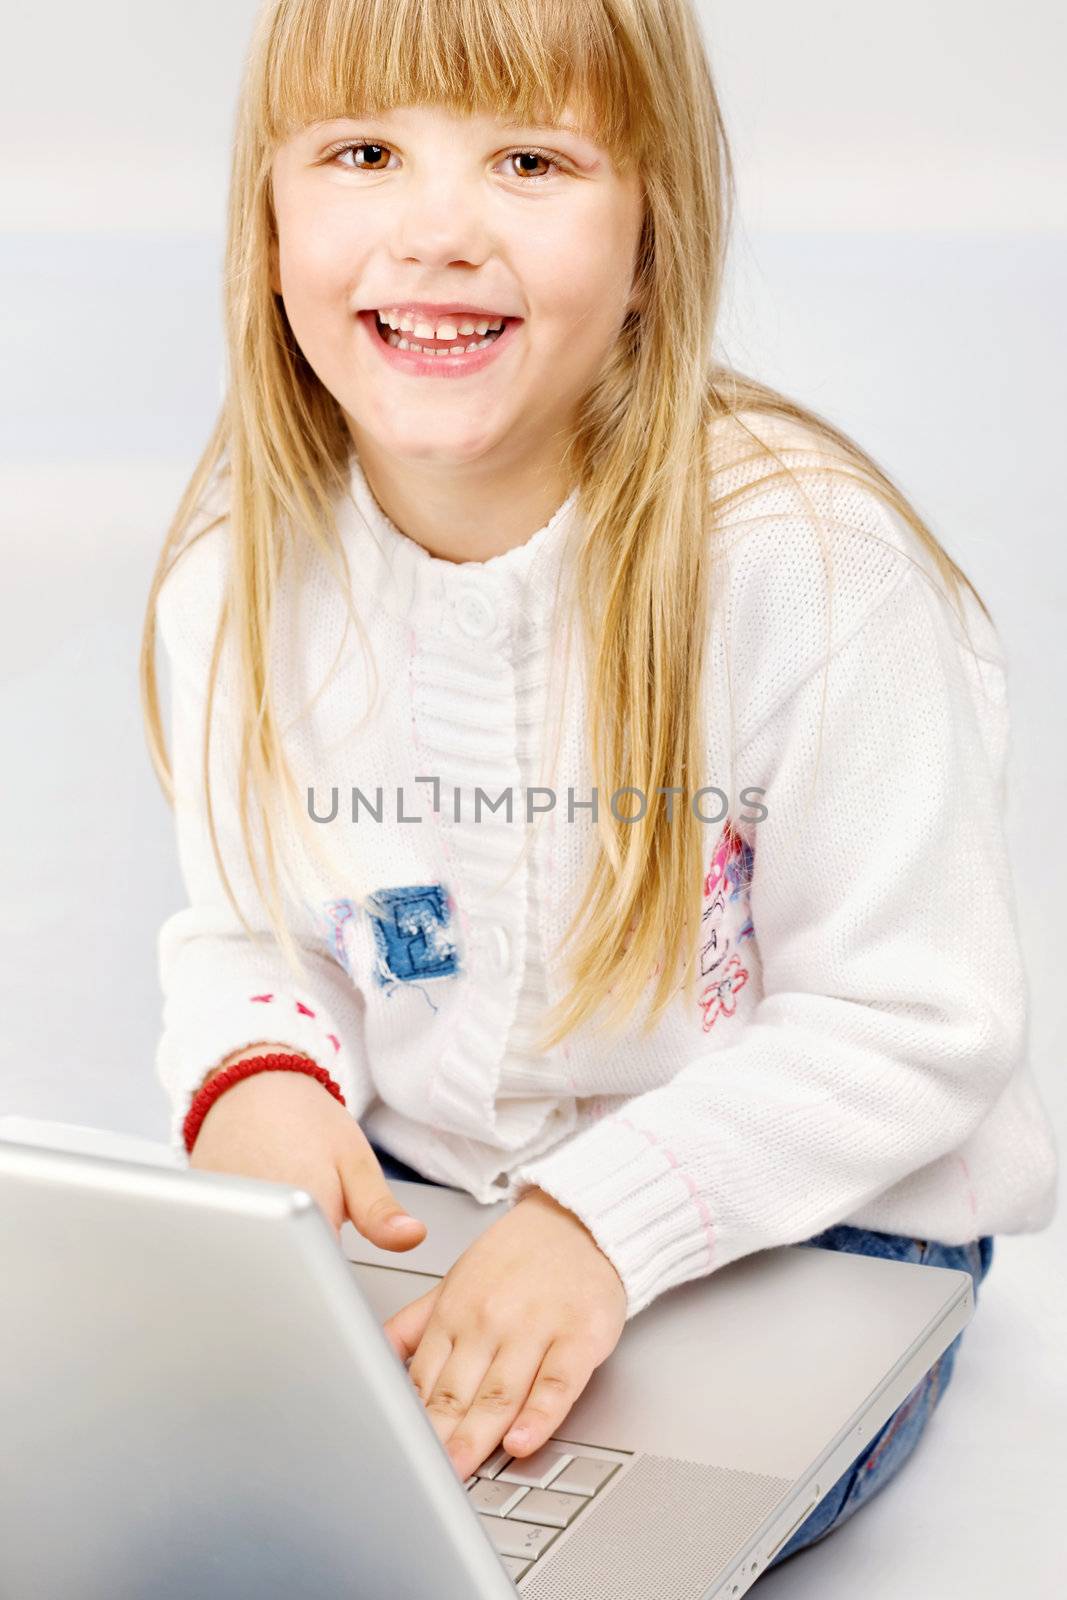 Smiled female child holding laptop